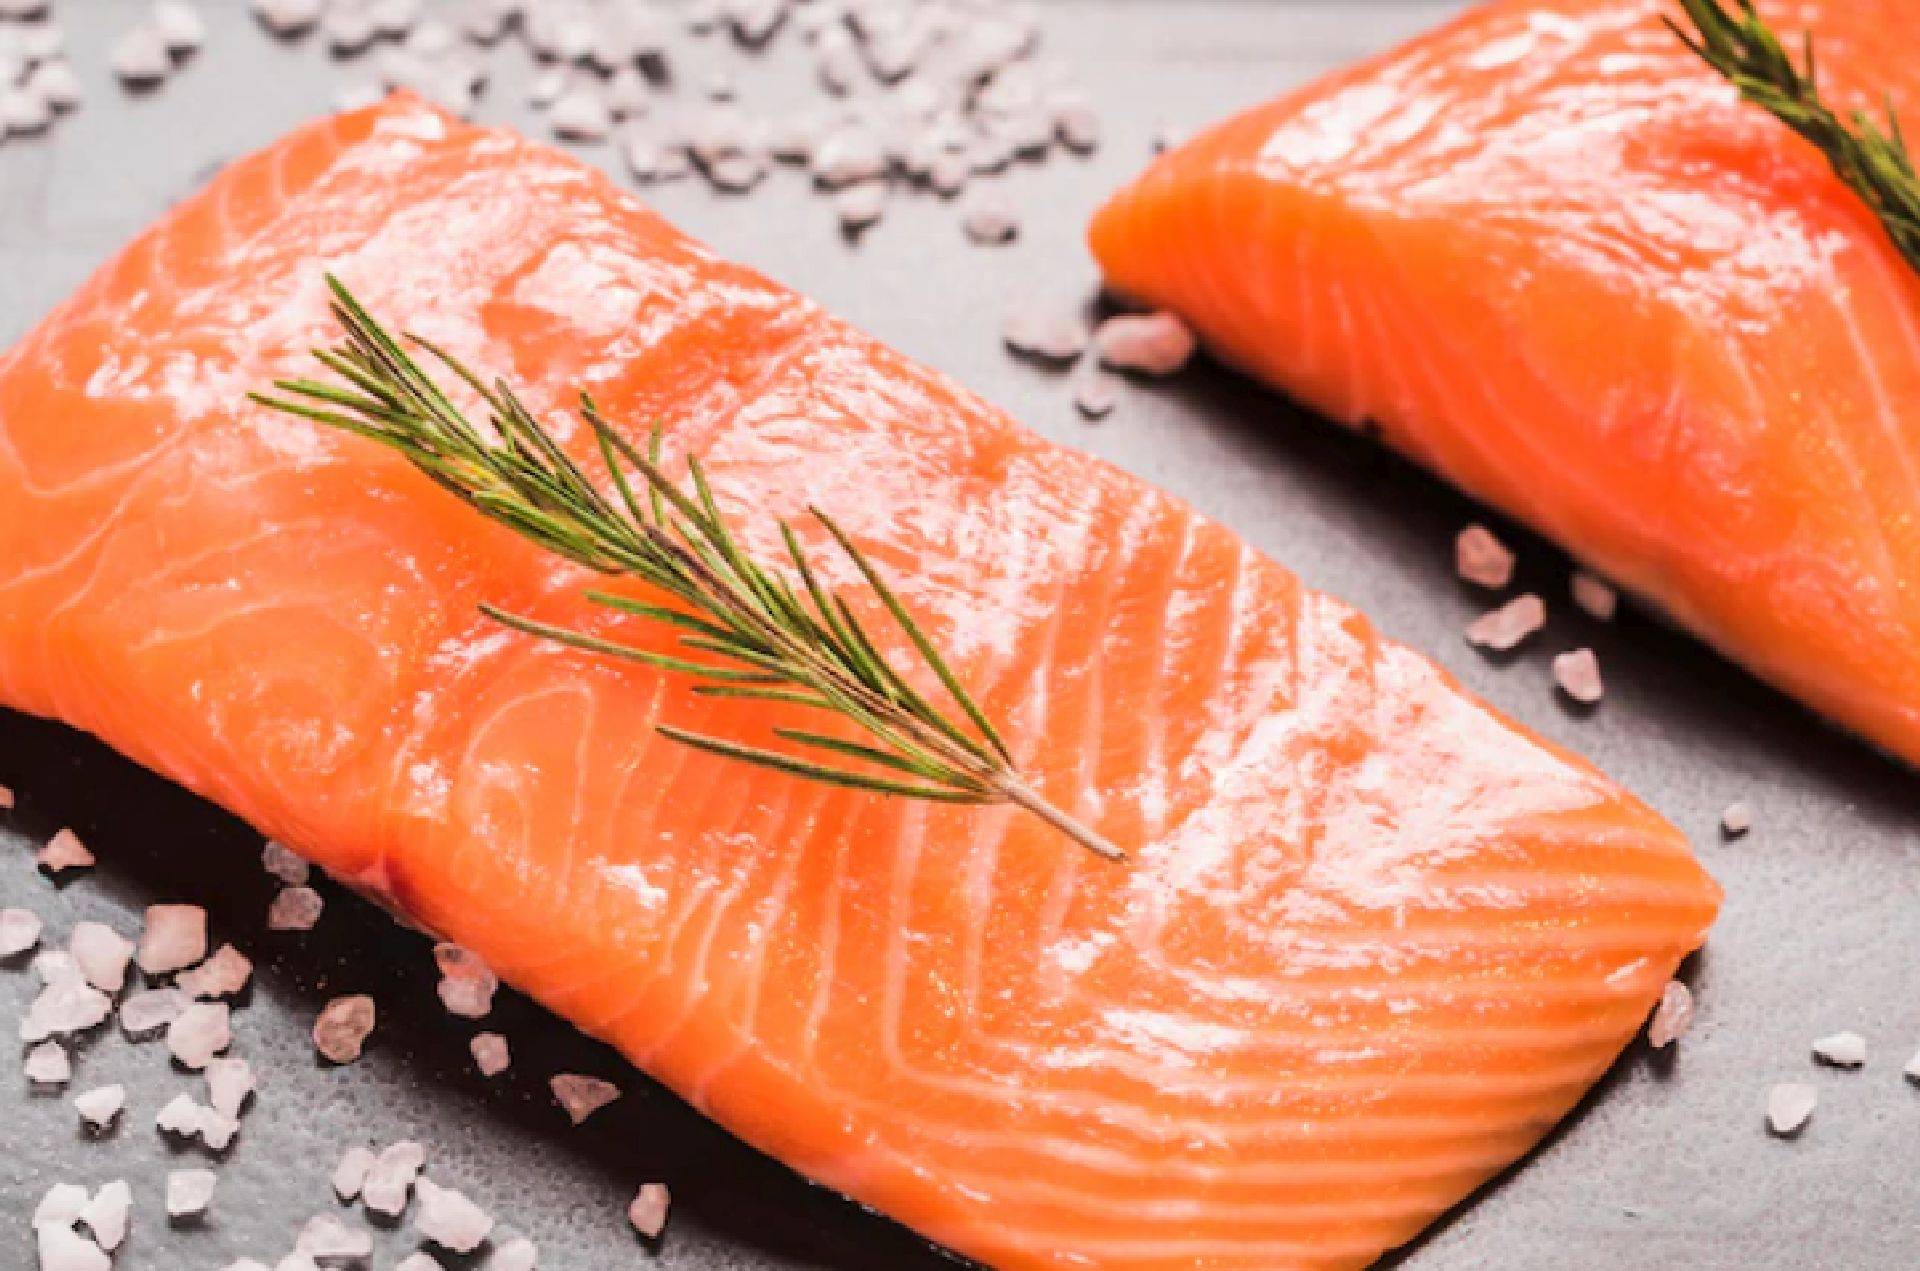 Los pescados azules son ricos en omega 3. Entre ellos se encuentran el salmón, la anchoa o boquerón, el atún, el bonito, la caballa y la sardina.(Freepik)